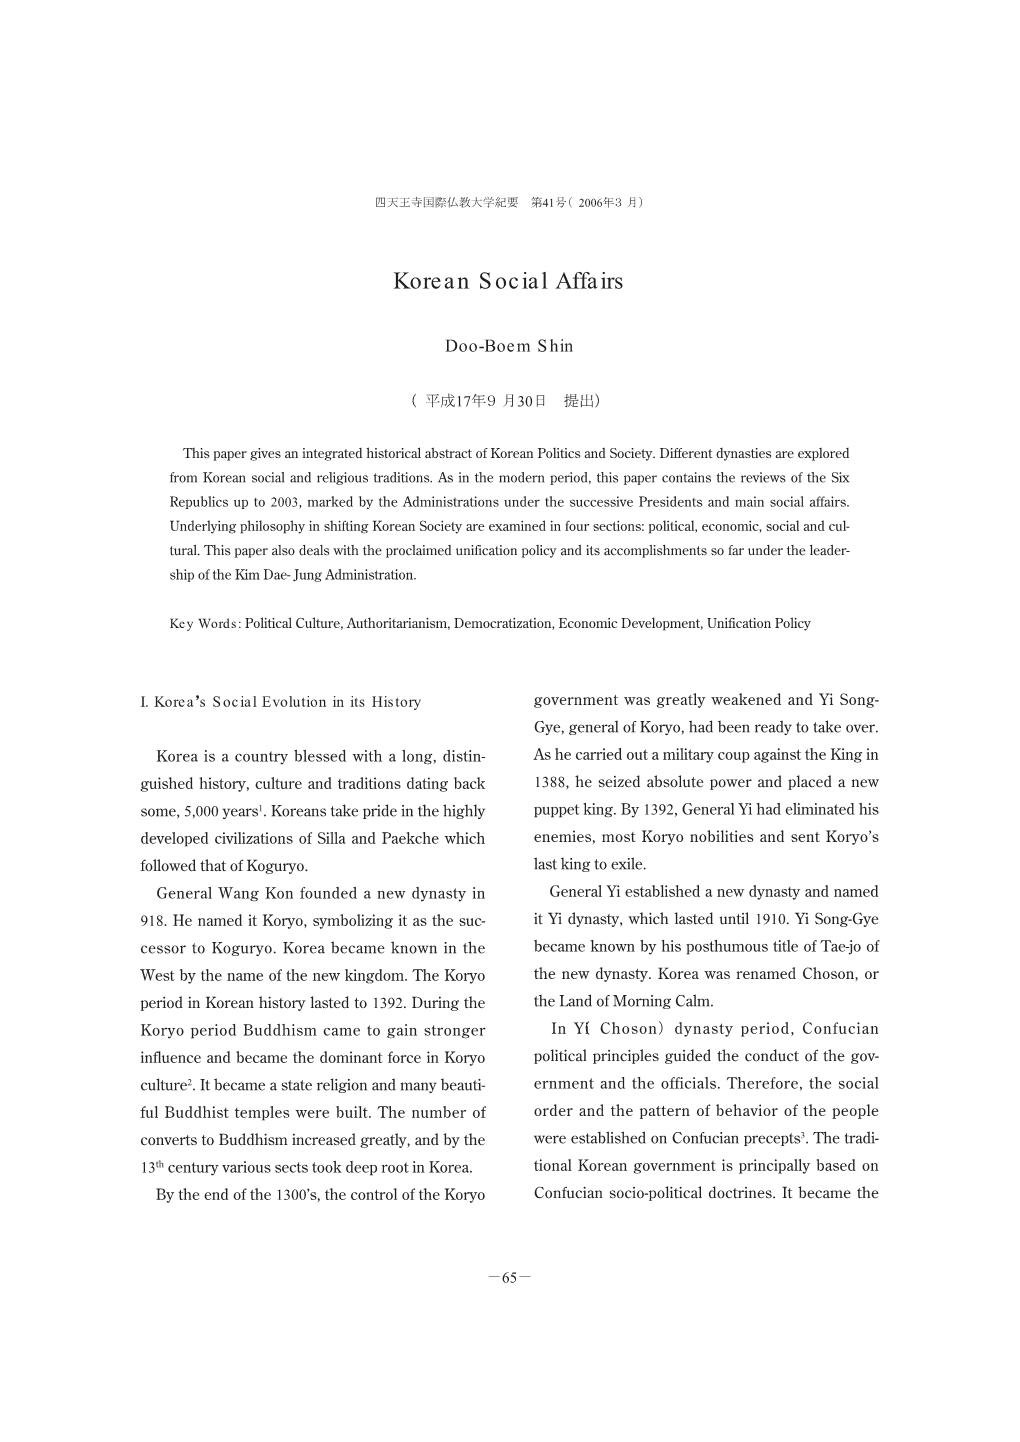 Korean Social Affairs